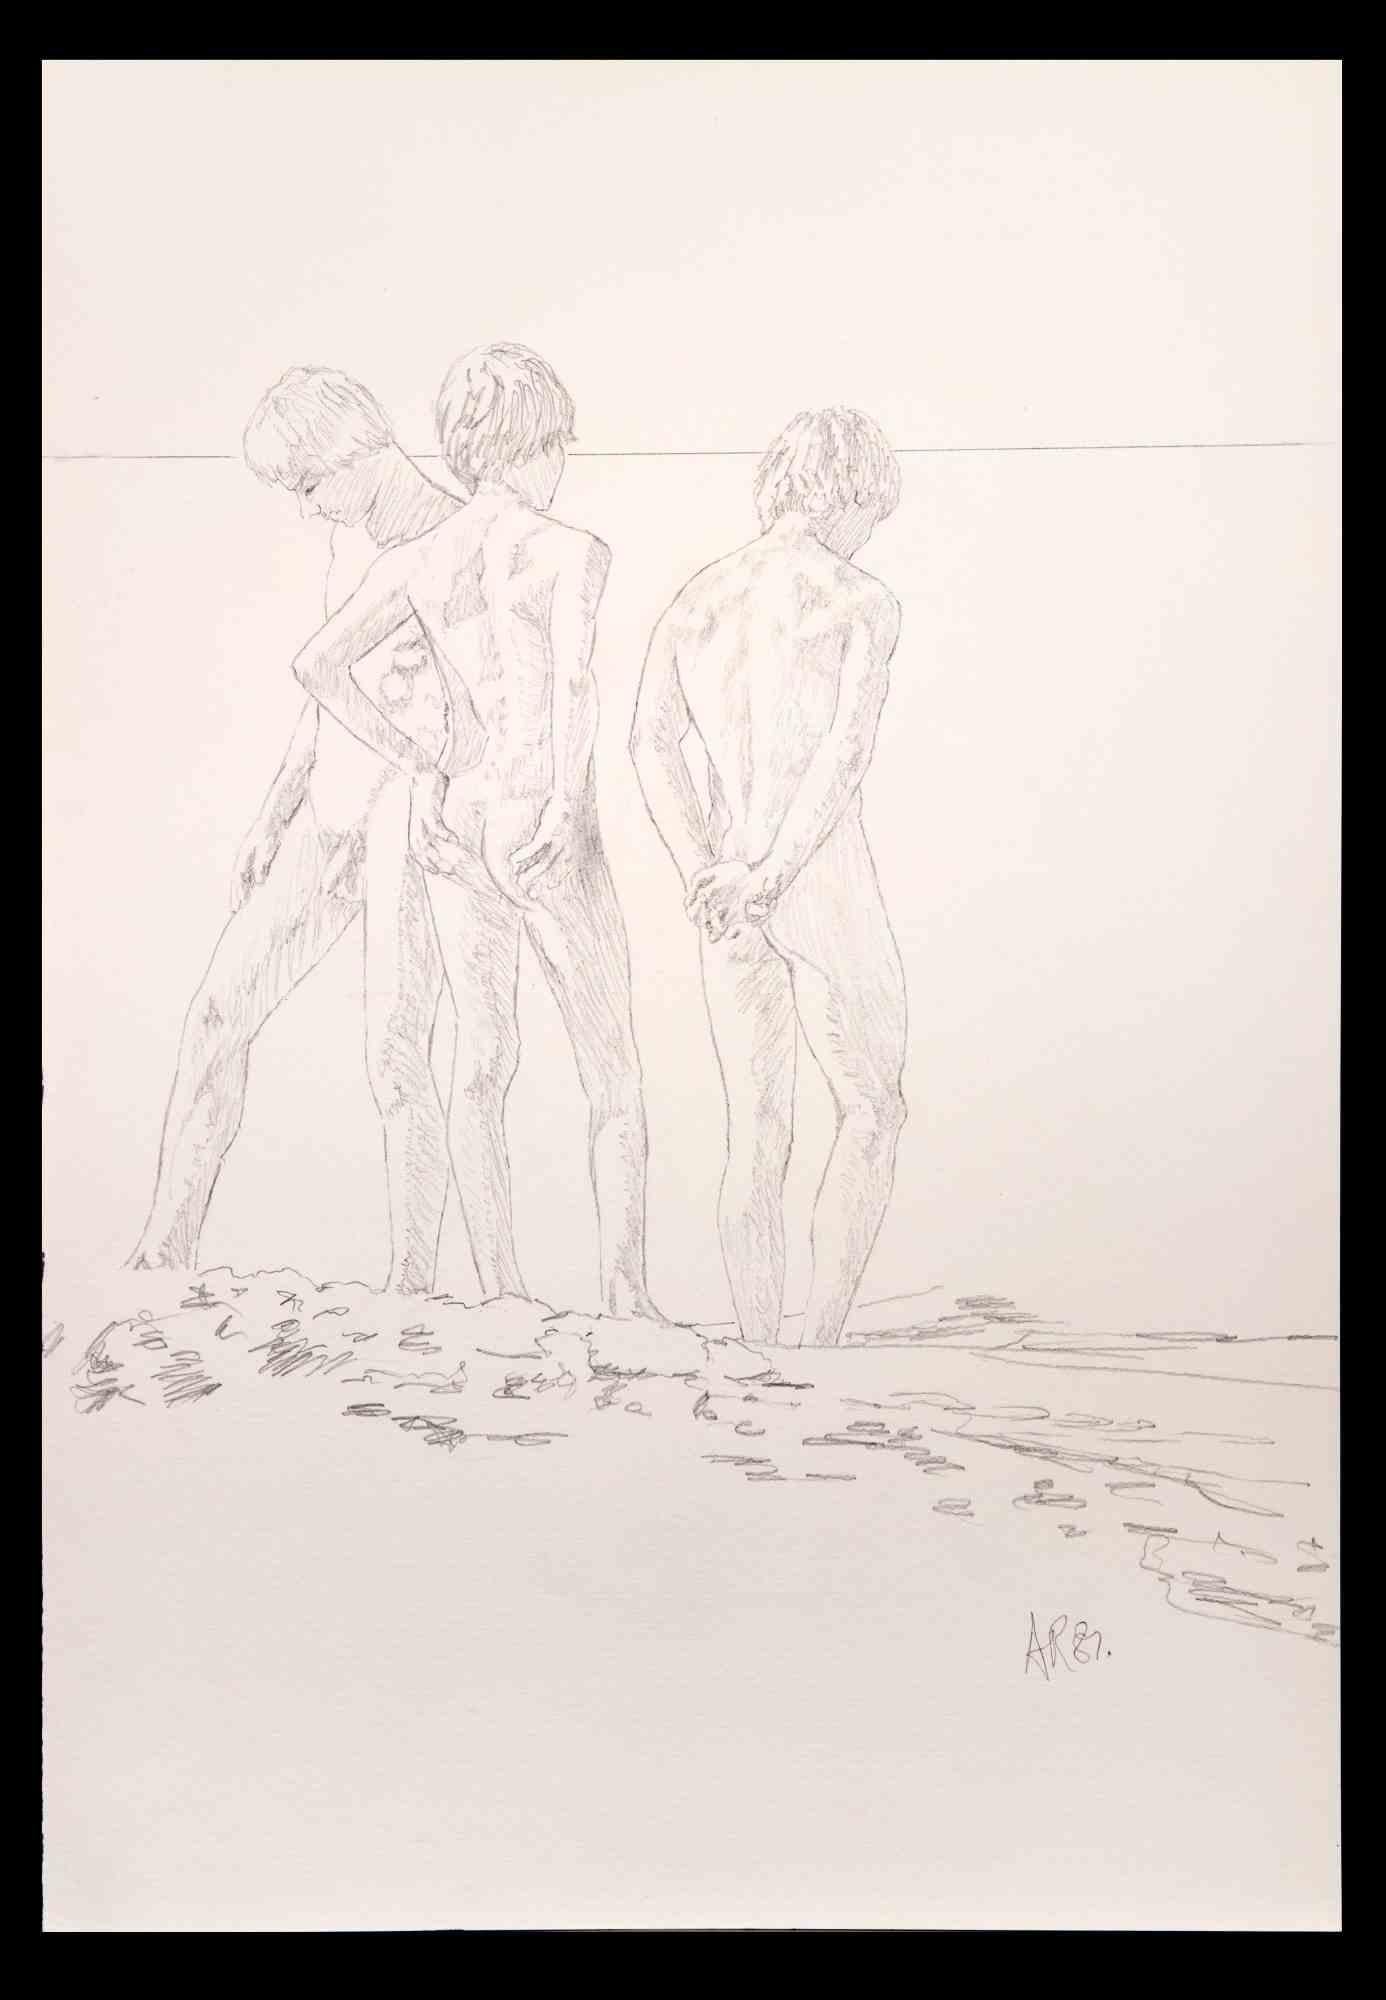  Les jeunes garçons à la plage - dessin original d'Anthony Roaland - 1982